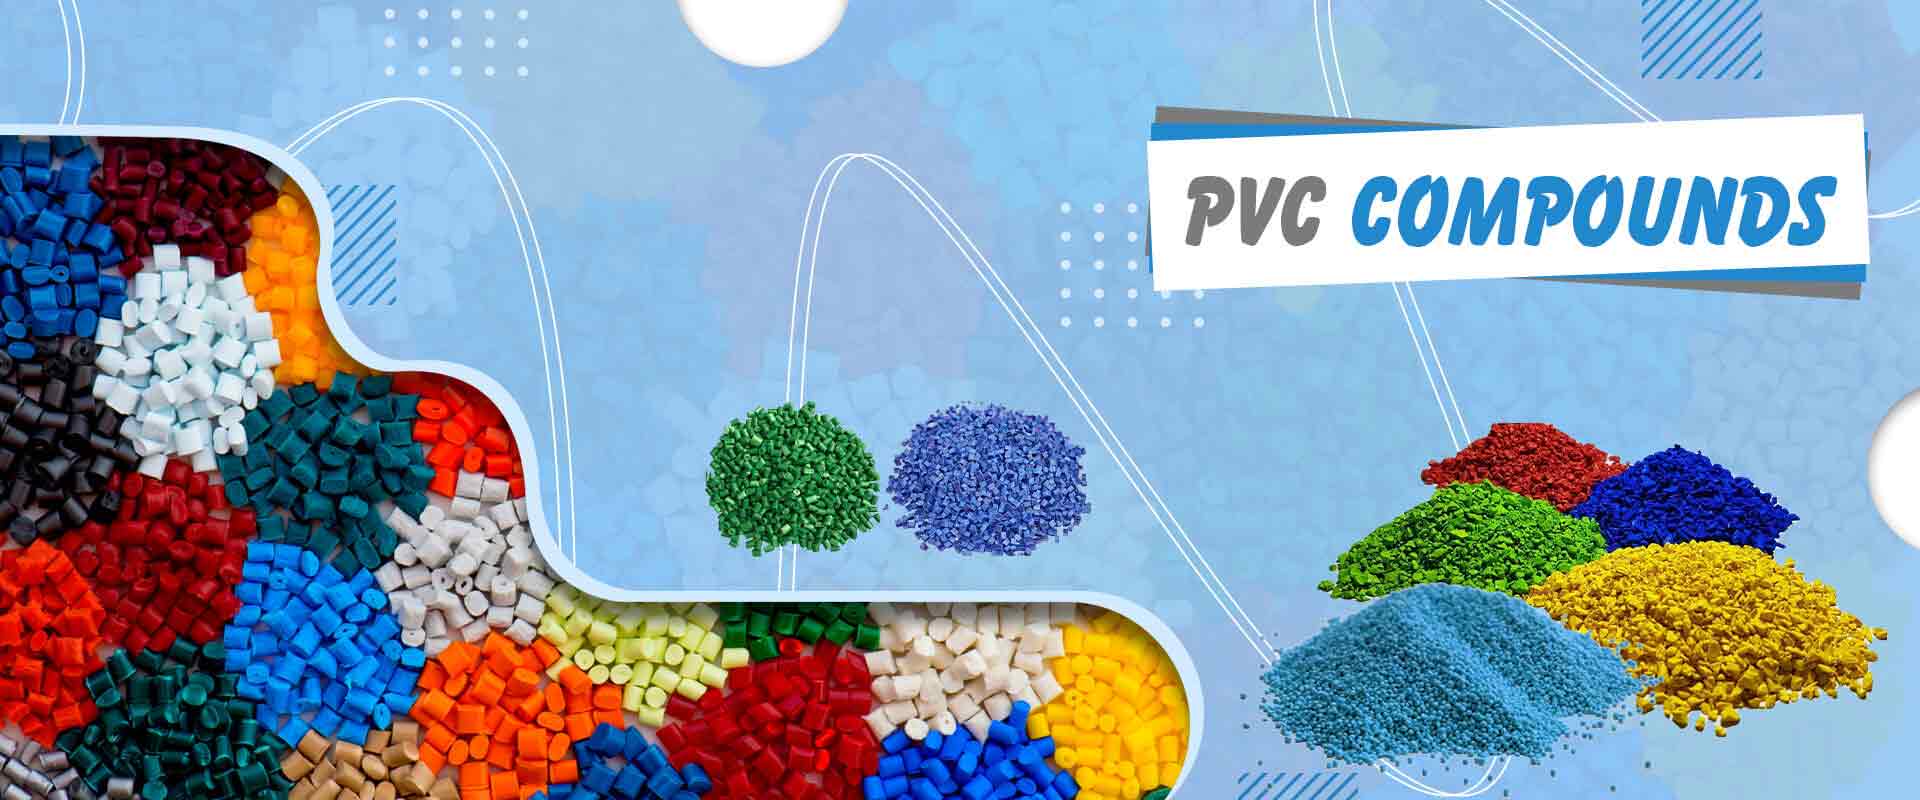 PVC Compounds